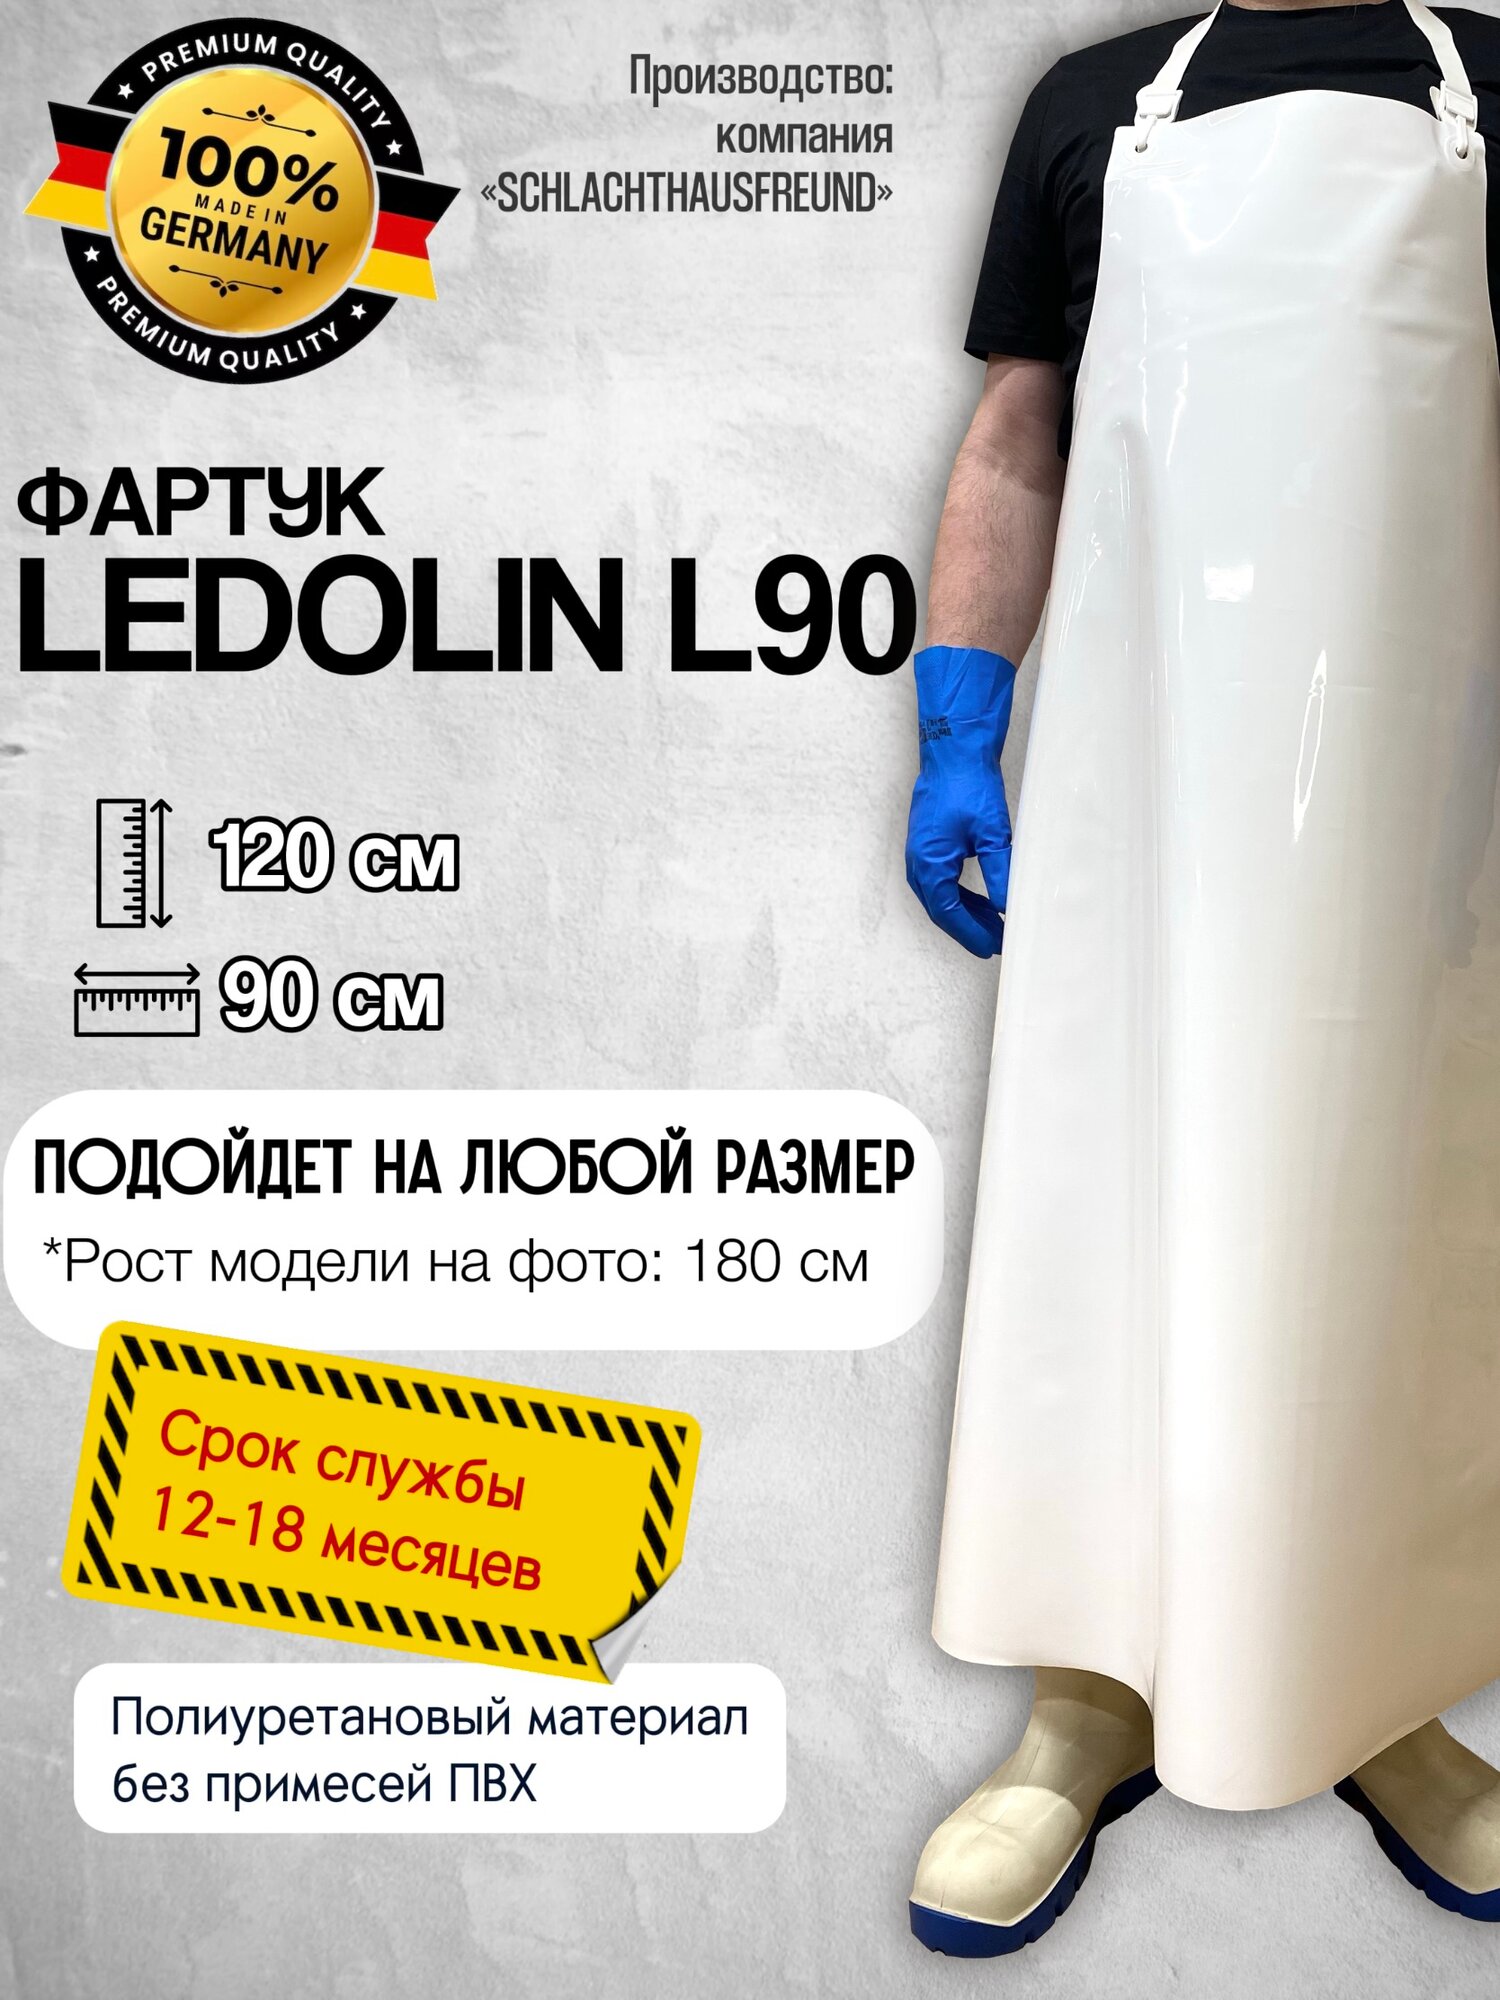 Фартук Ledolin L90 полиуретановый/длина 120 см